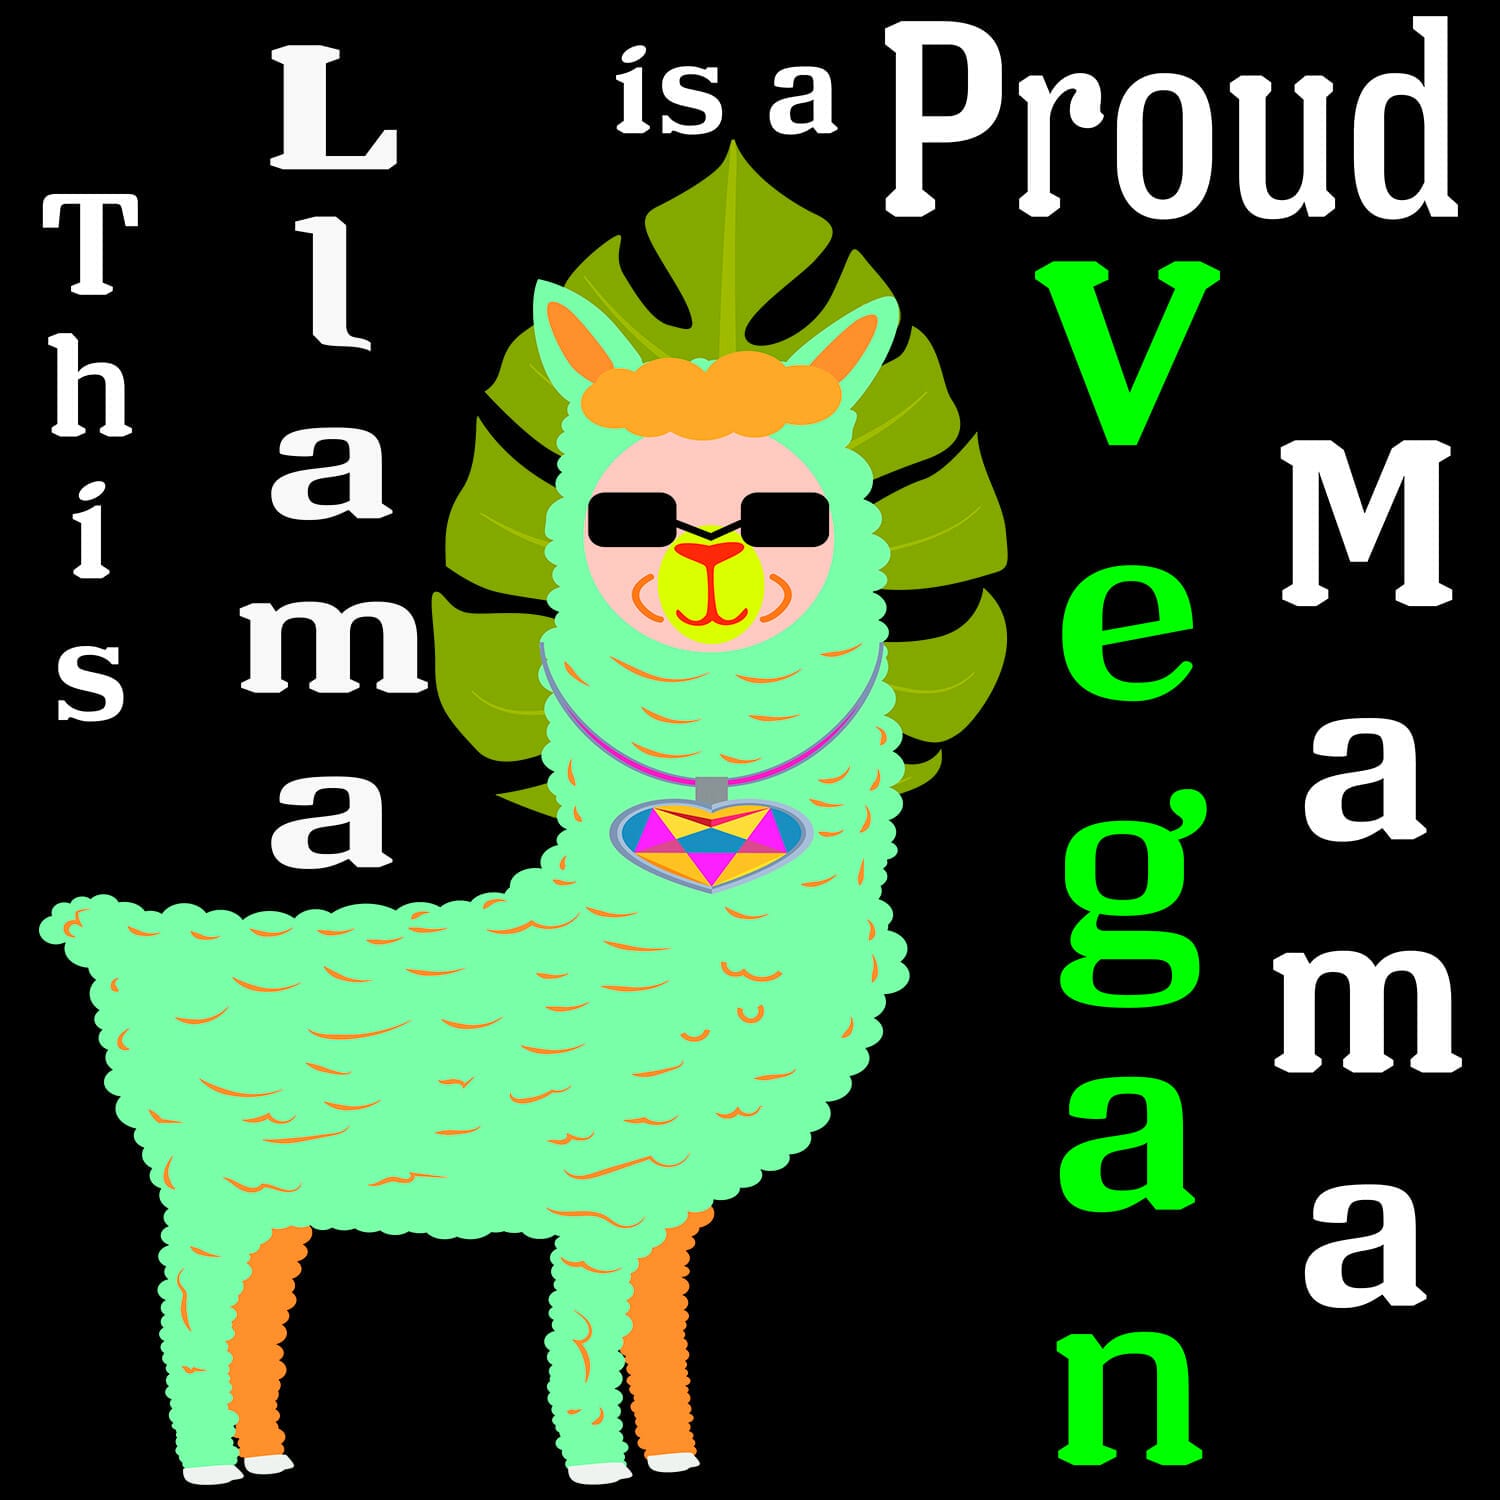 Llama proud vegan mama design